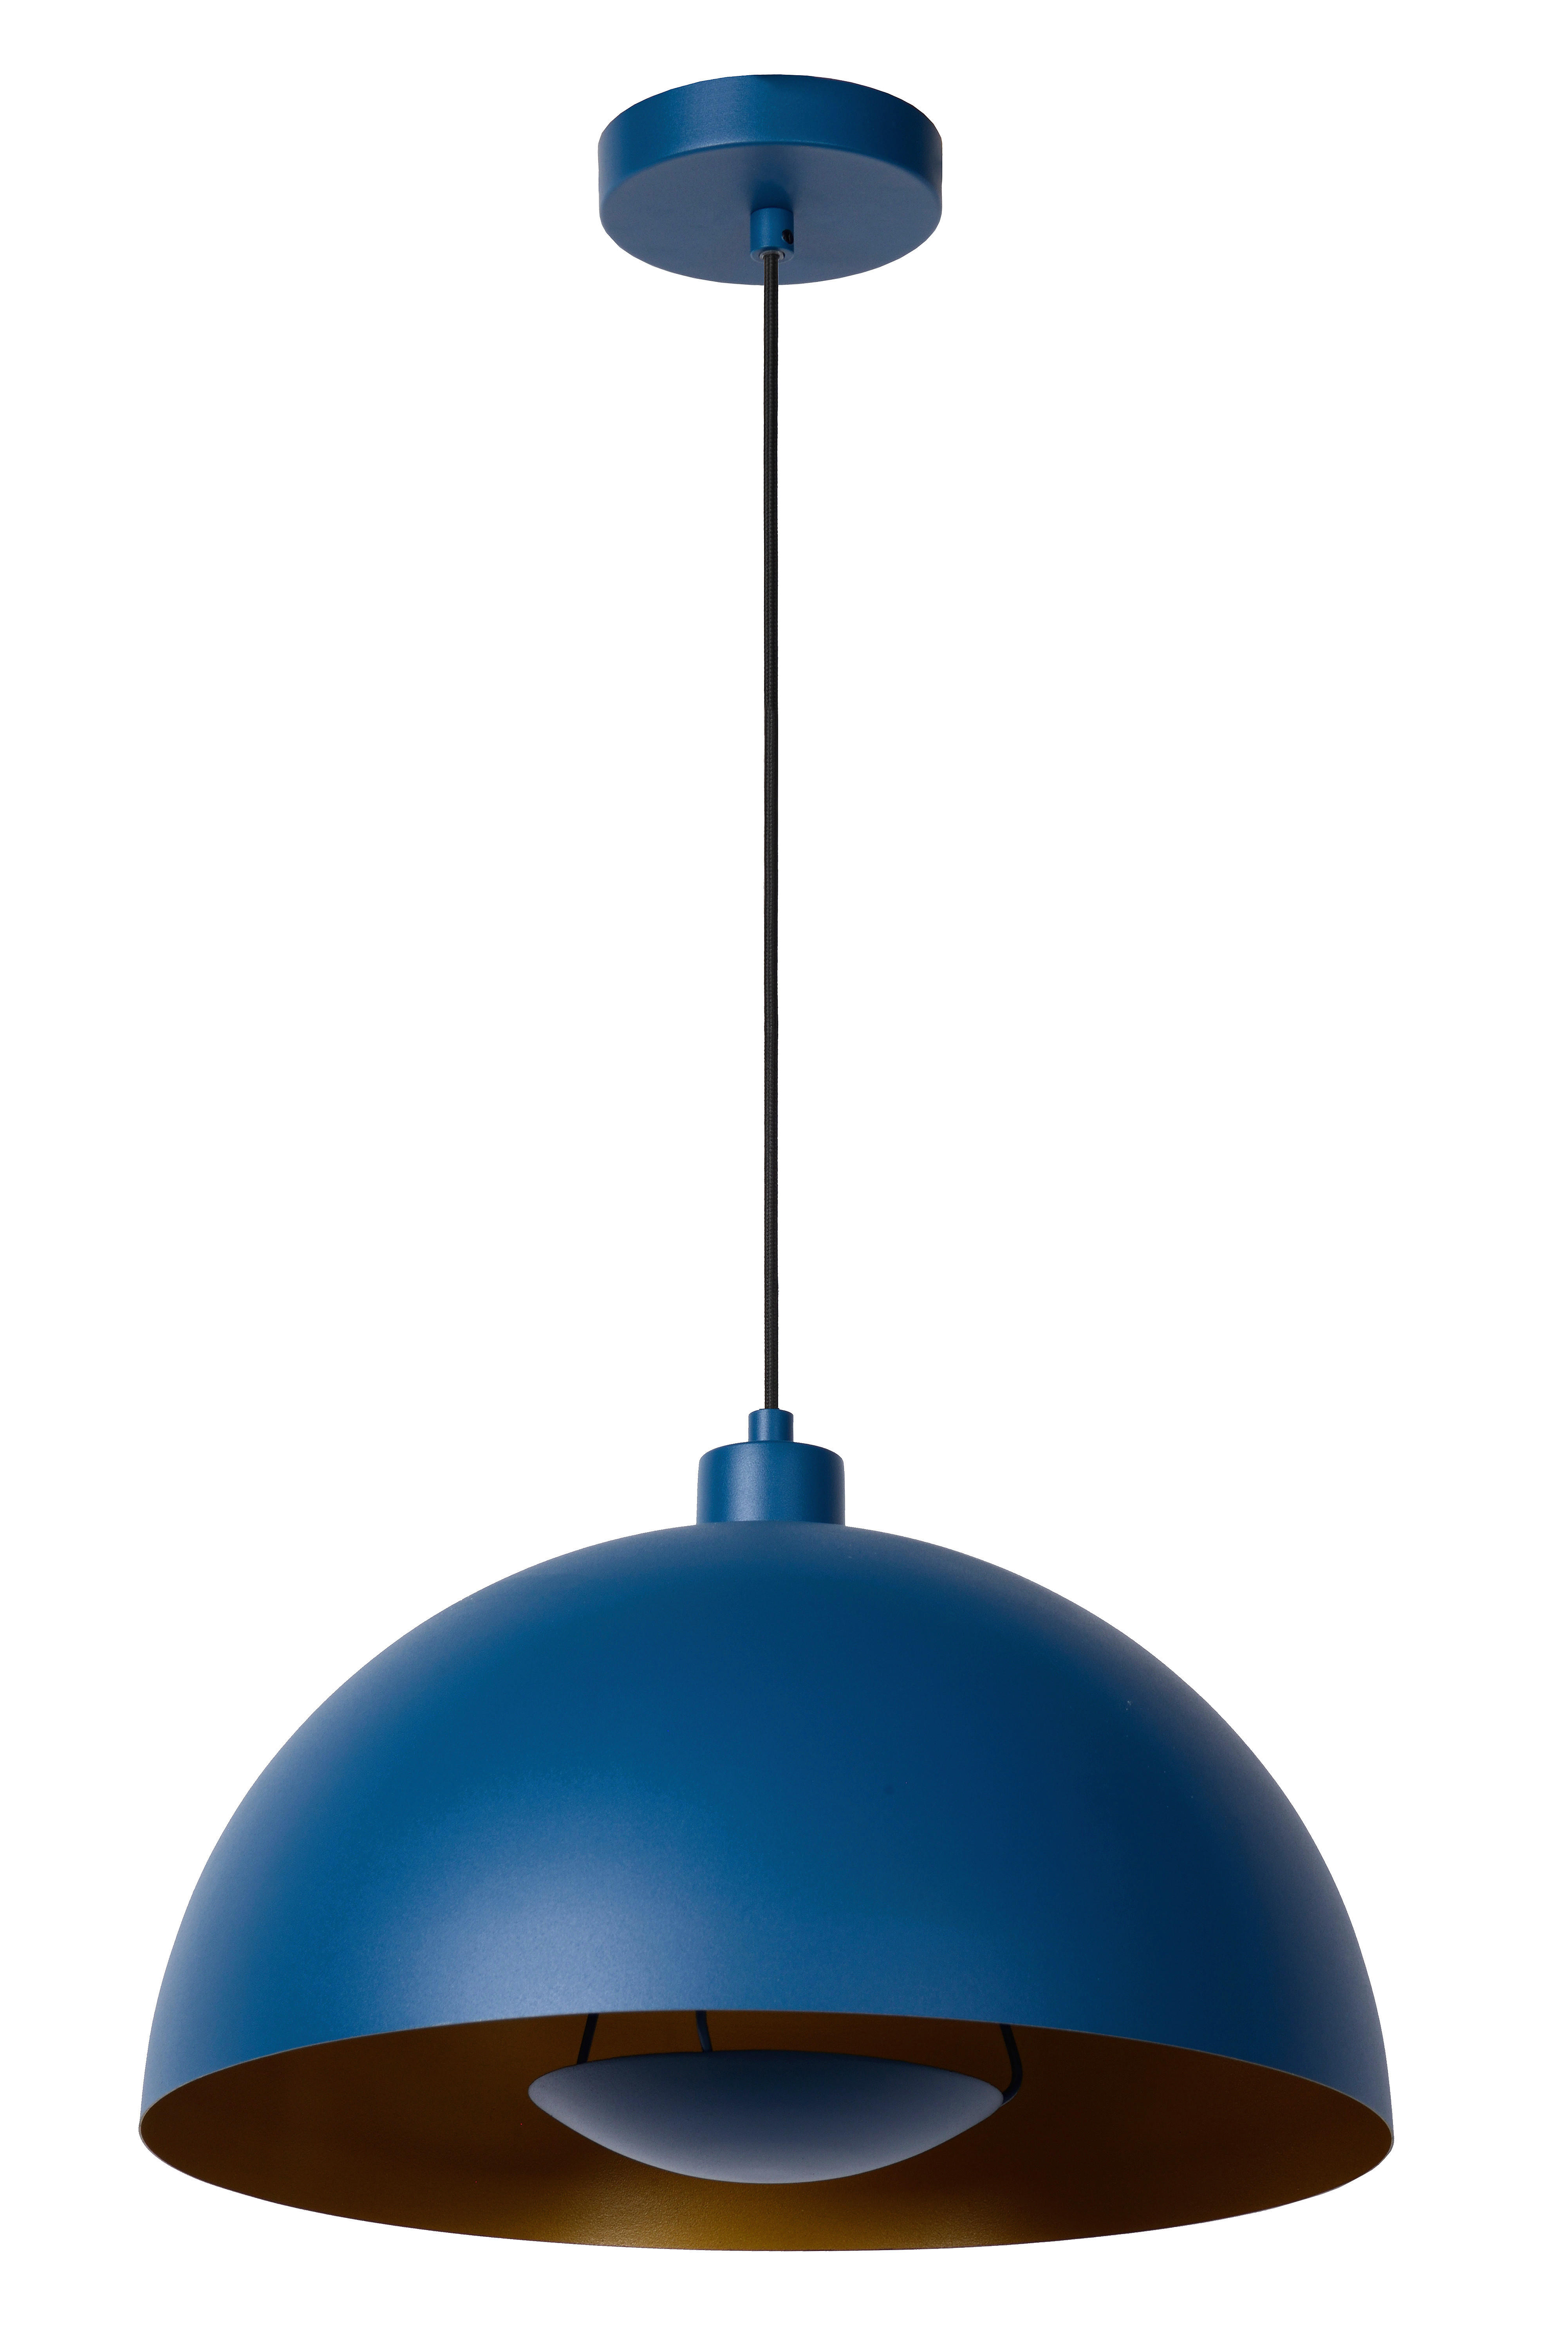 HÄNGELEUCHTE SIEMON  - Blau, Design, Metall (40/150cm) - Lucide